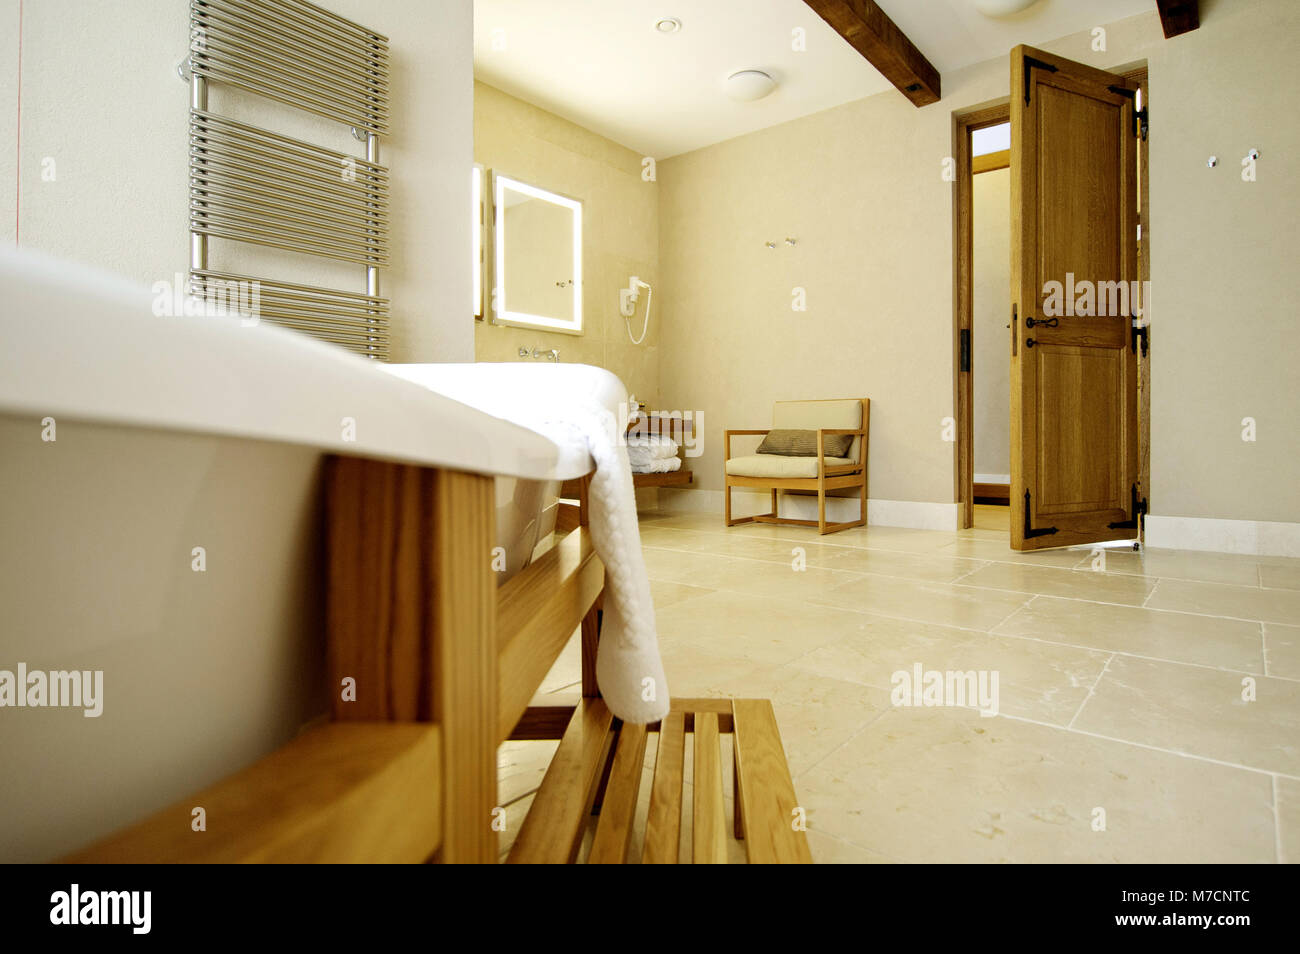 Belle baignoire blanc pour une porte ouverte. Baignoire se trouve dans un cadre en bois Banque D'Images